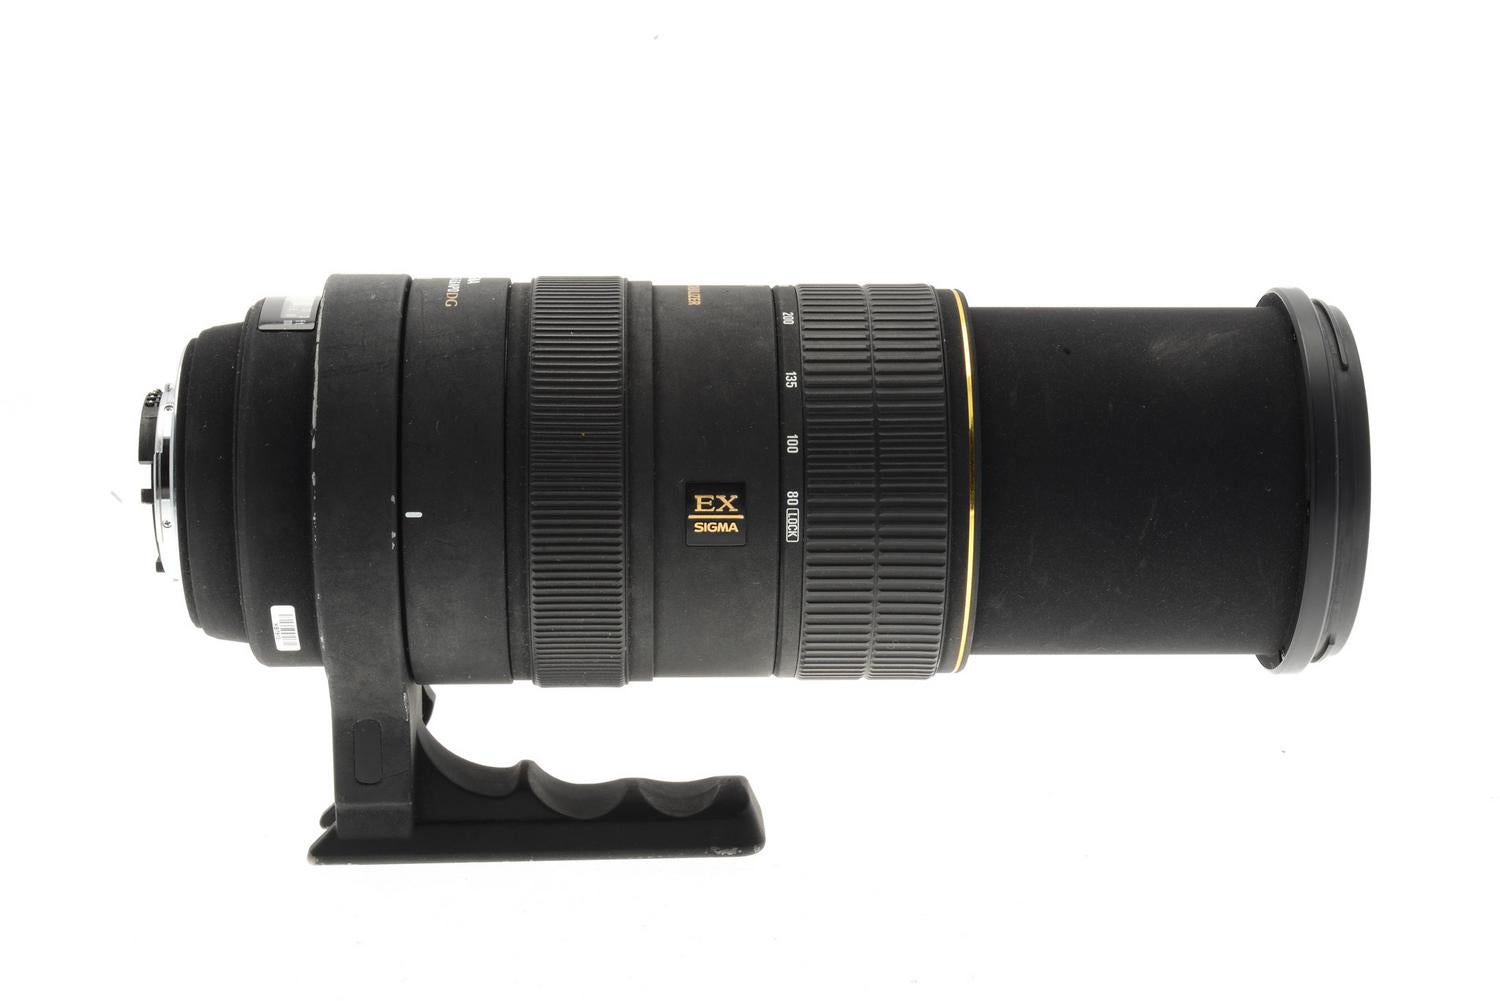 Sigma 80-400mm f4.5-5.6 APO DG OS - Lens